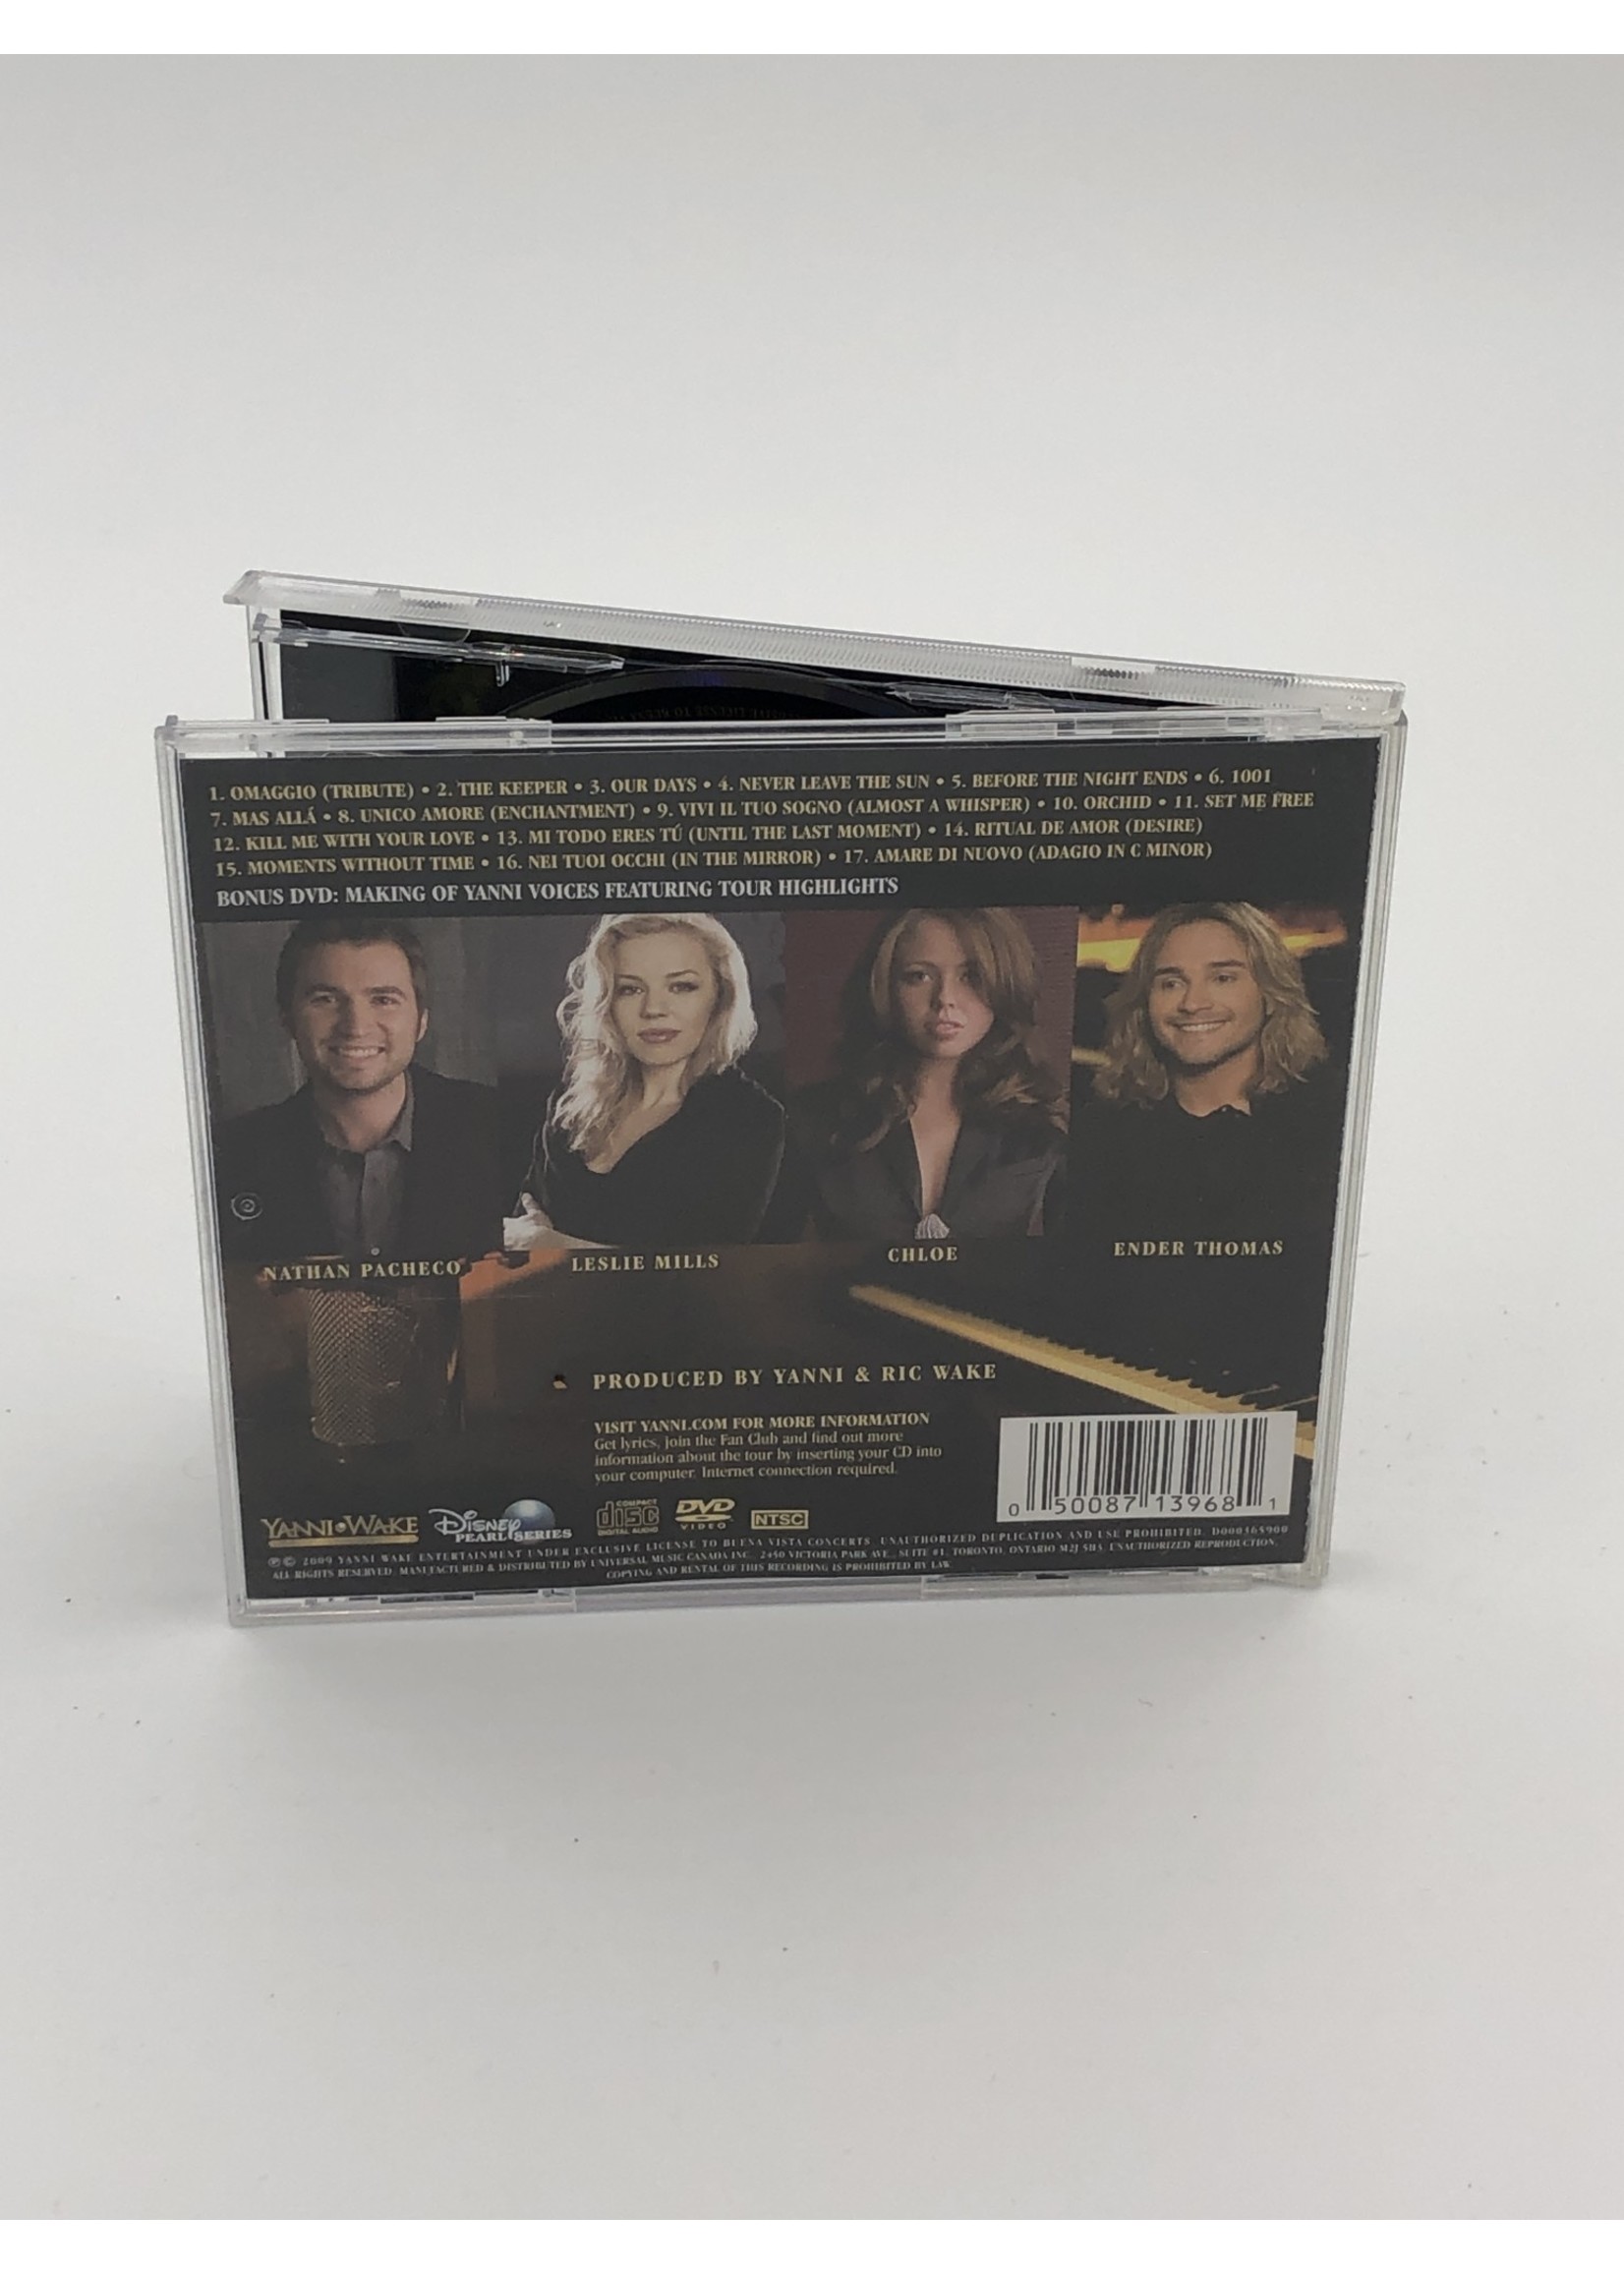 CD Yanni Voices 2 CD